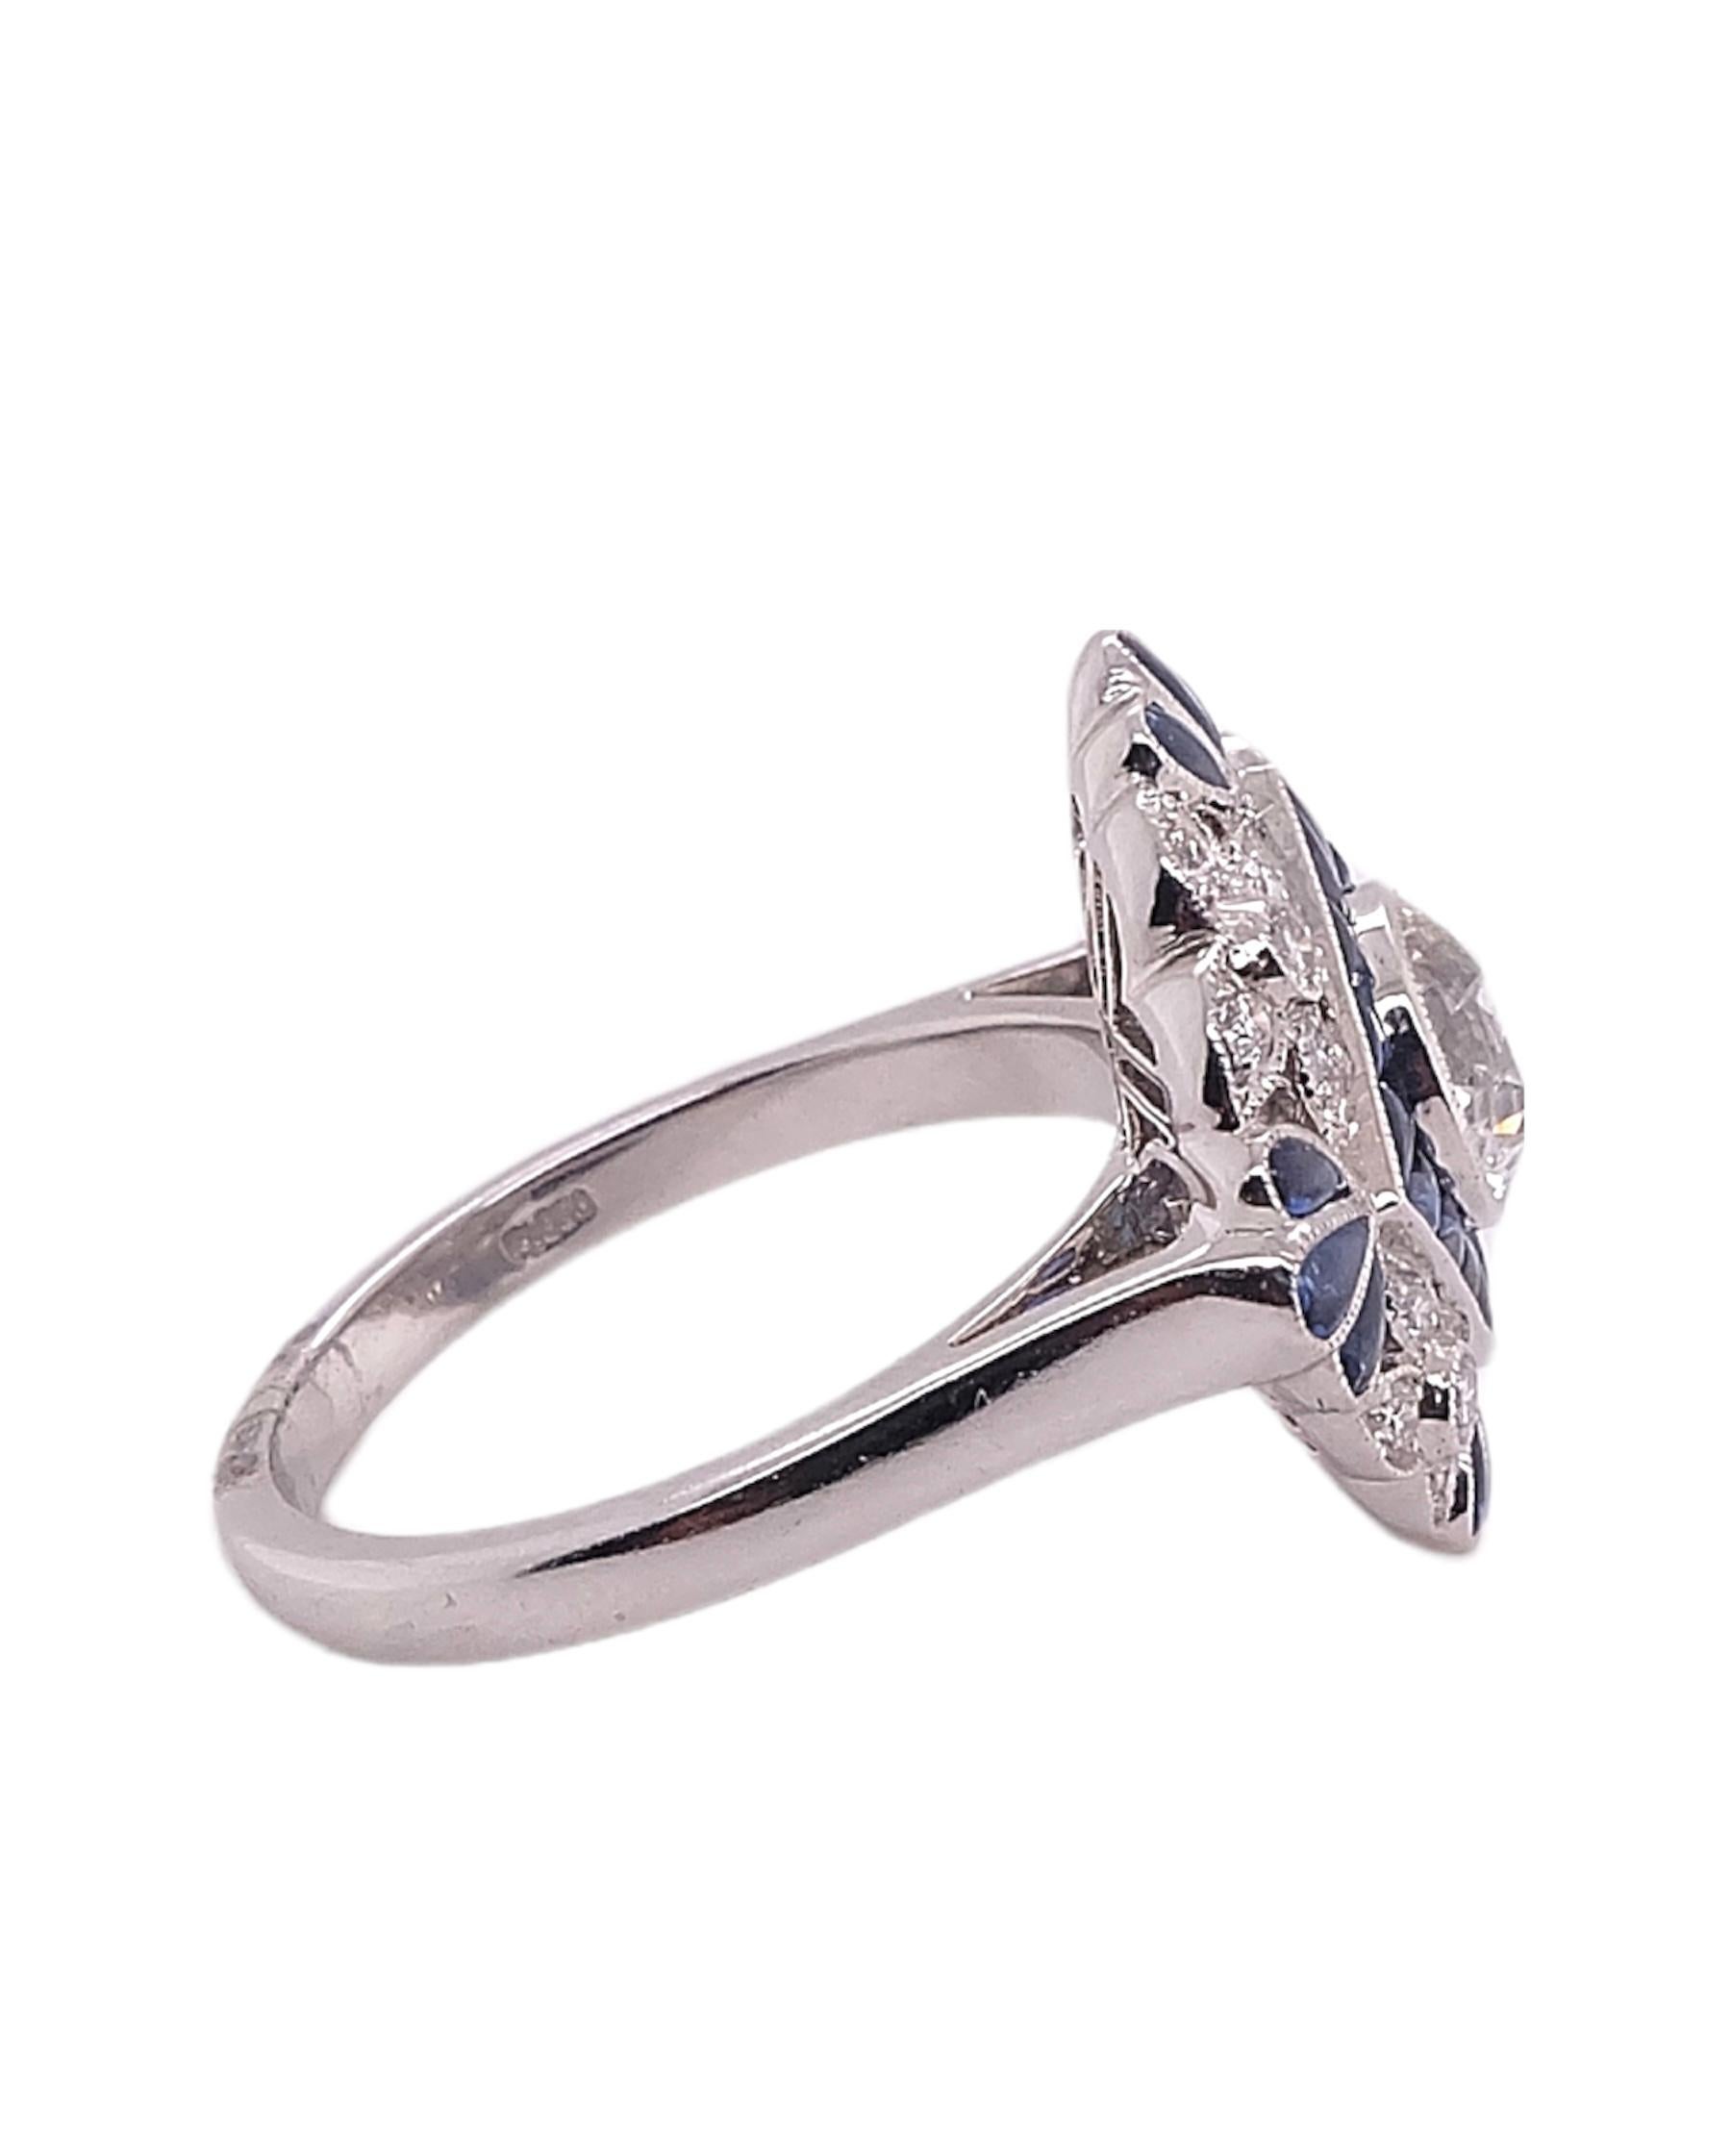 Ring im Art-Déco-Stil, gefasst in Platin. Der Ring besteht aus einem rund geschliffenen zentralen Diamanten mit einem Gewicht von 0,93 Karat, ergänzt durch blaue Saphire mit einem Gewicht von 0,95 Karat und kleine Diamanten mit einem Gewicht von